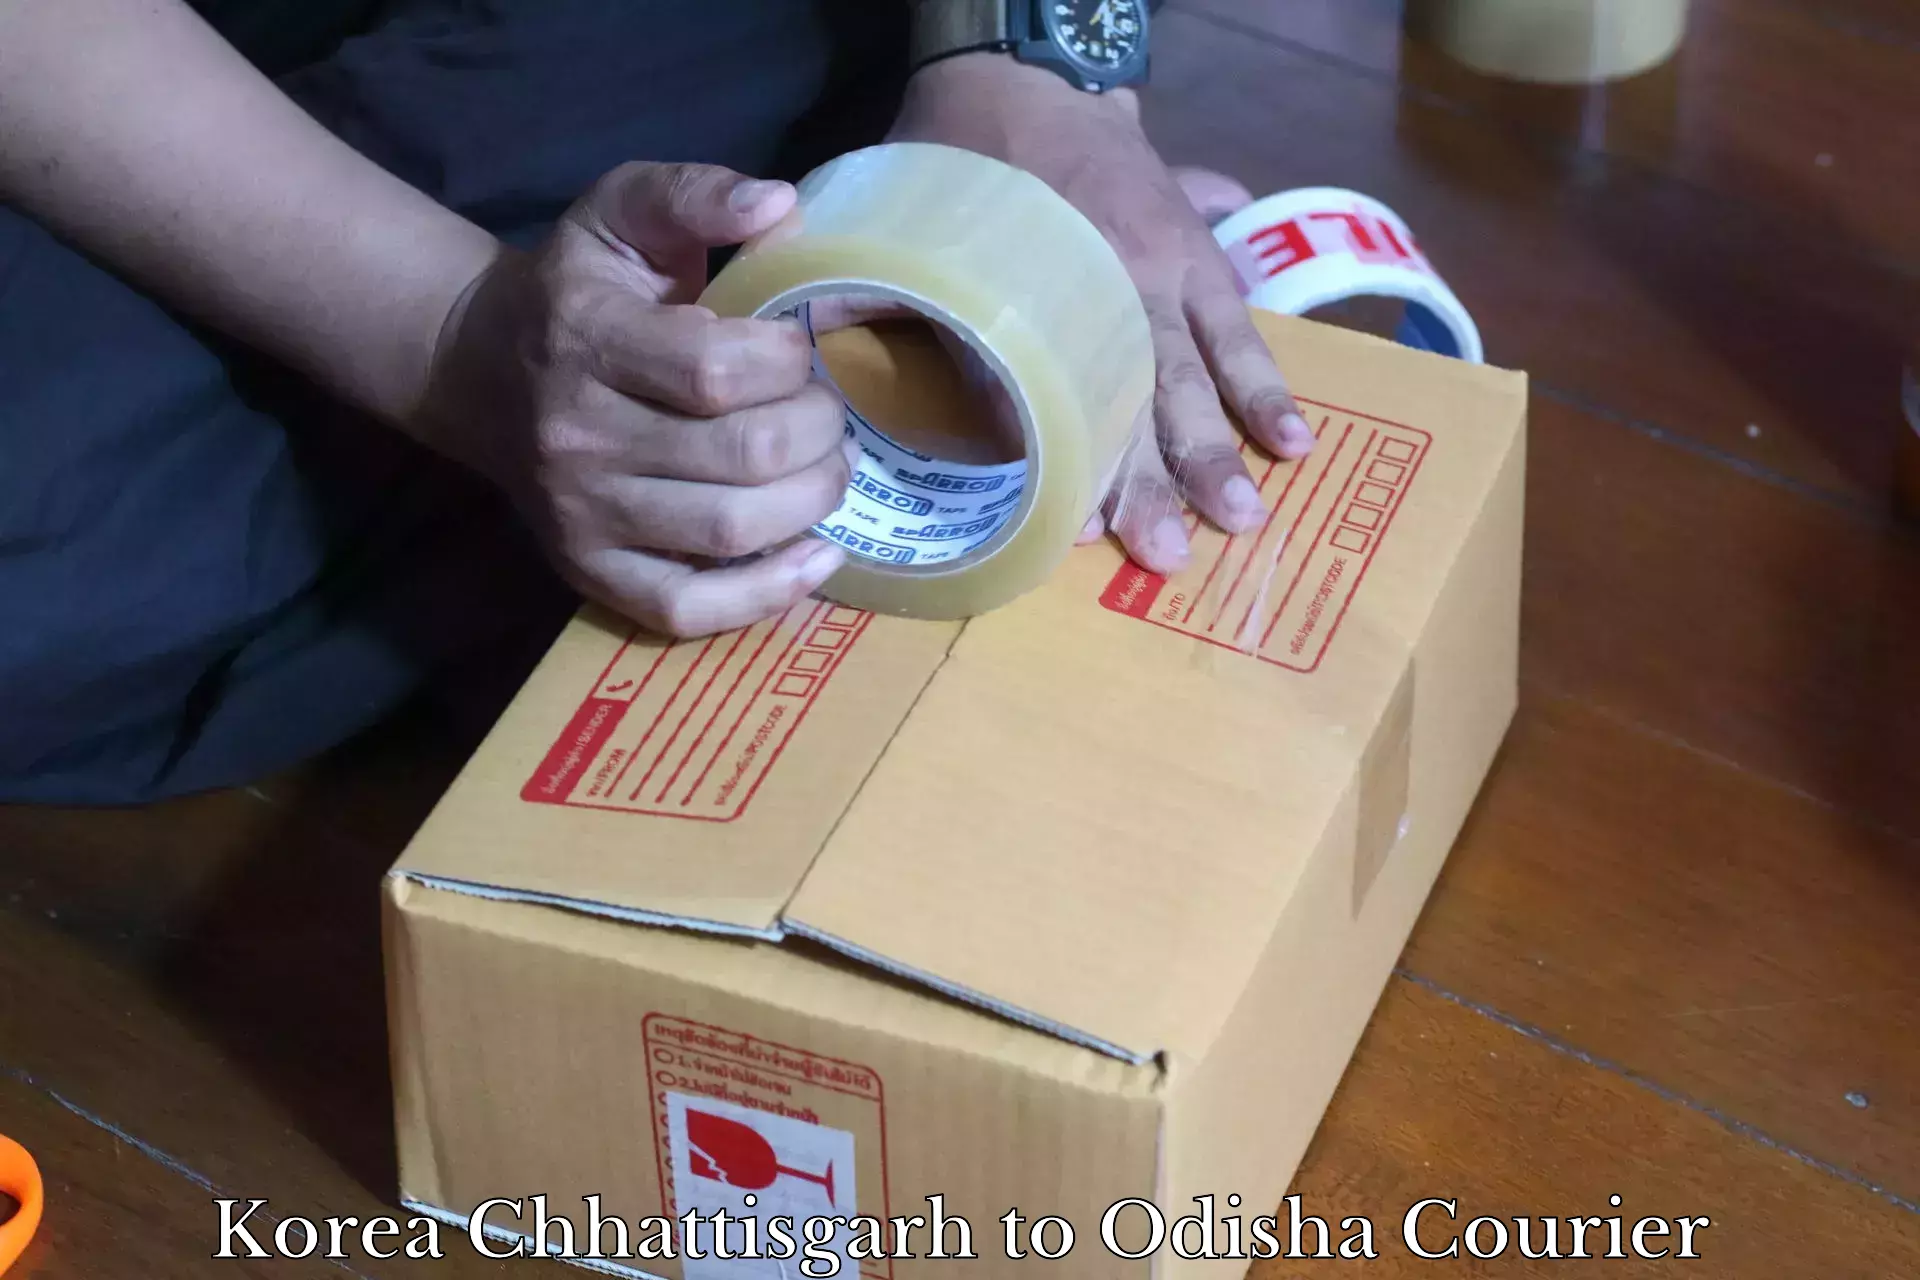 Fastest parcel delivery in Korea Chhattisgarh to Talcher